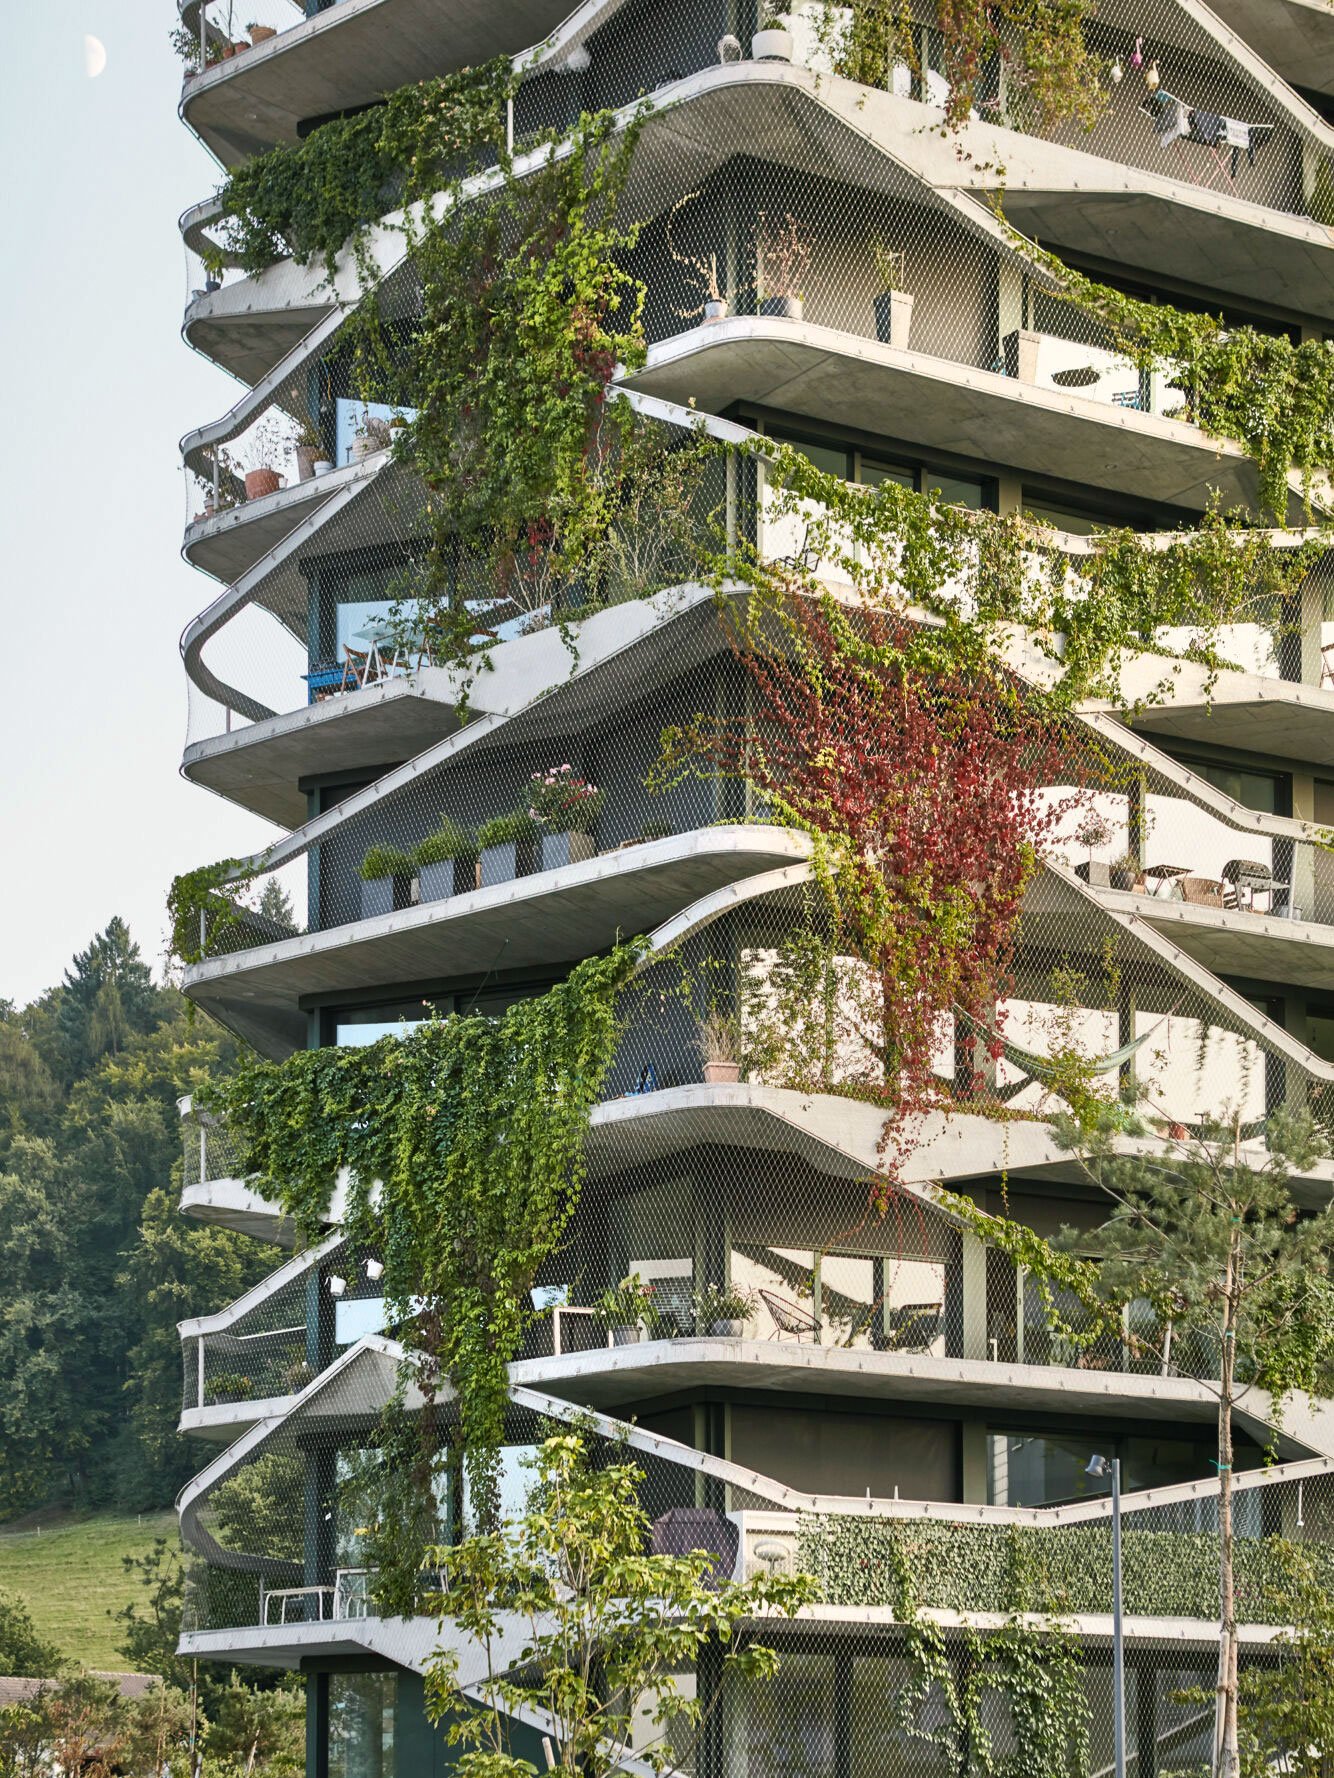 Garden Tower, Bern: Der Name dieses eleganten 16-geschoßigen Wohnturms in der Schweizer Hauptstadt Bern erklärt sich von selbst. Nicht nur ist seine weiche, kurvig-elegante Form der Natur nachempfunden, auch die Balkone mit ihrem feinen Metallgewebe werden dank Kletterpflanzen zu einem vertikalen Garten, der als Sonnenschutz und als grüner Kontrast zum glatt-grauen Beton fungiert. »Wir wollten, dass das Gebäude einem bewachsenen Felsen ähnelt«, sagen Buchner Bründler Architekten. bbarc.ch